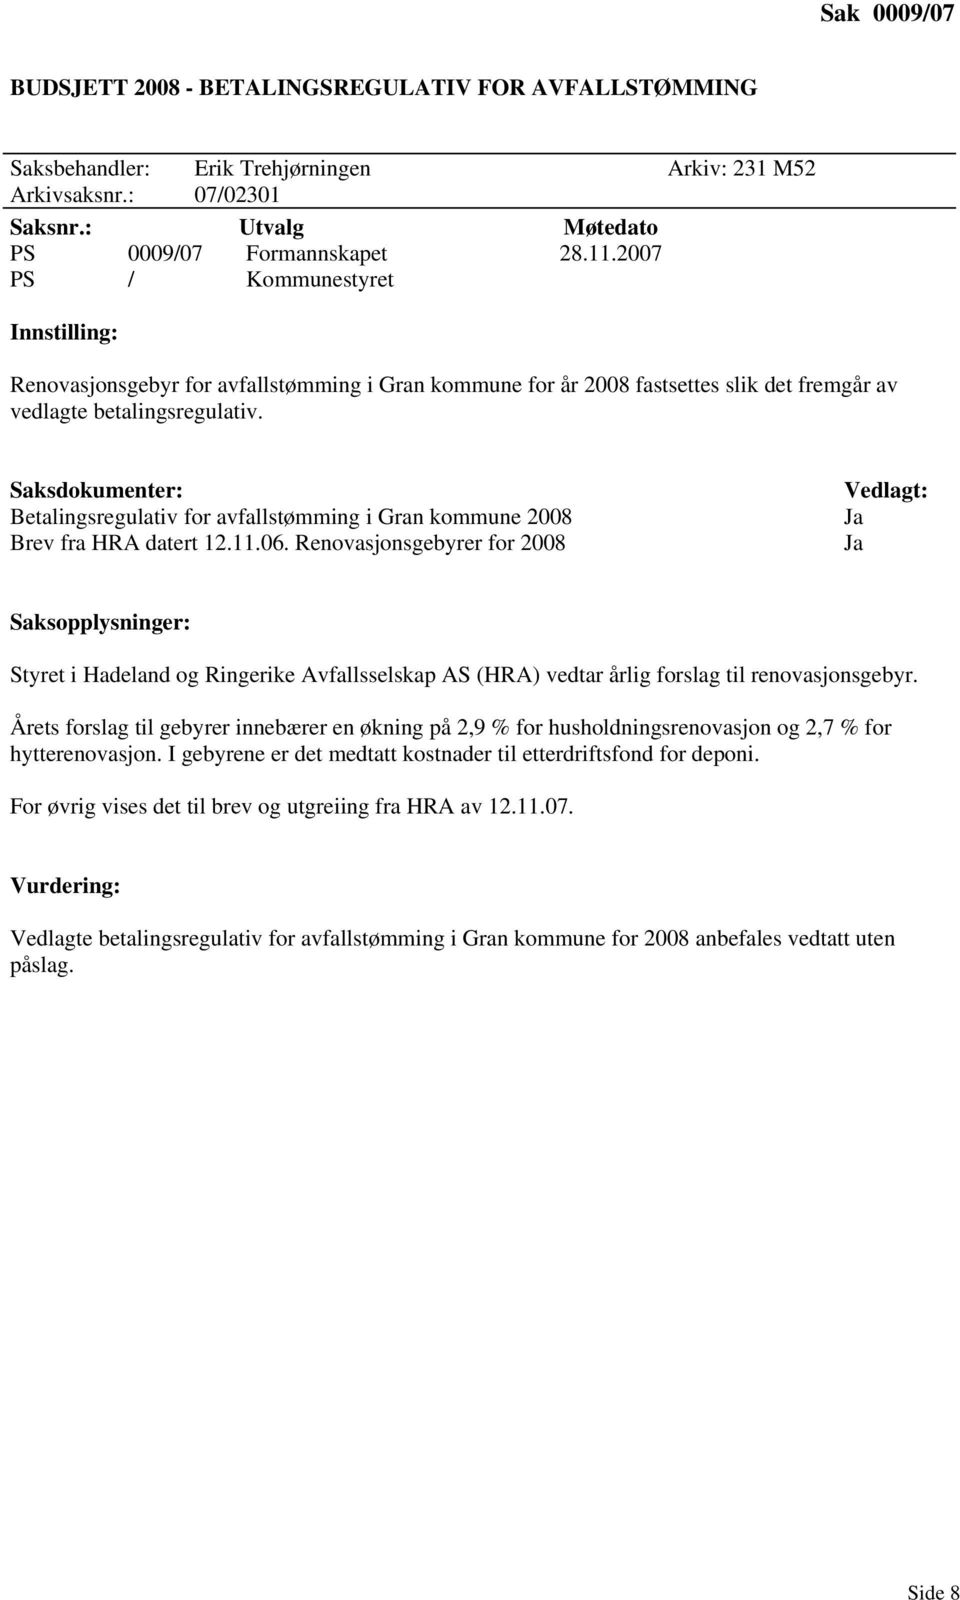 Betalingsregulativ for avfallstømming i Gran kommune 2008 Brev fra HRA datert 12.11.06.